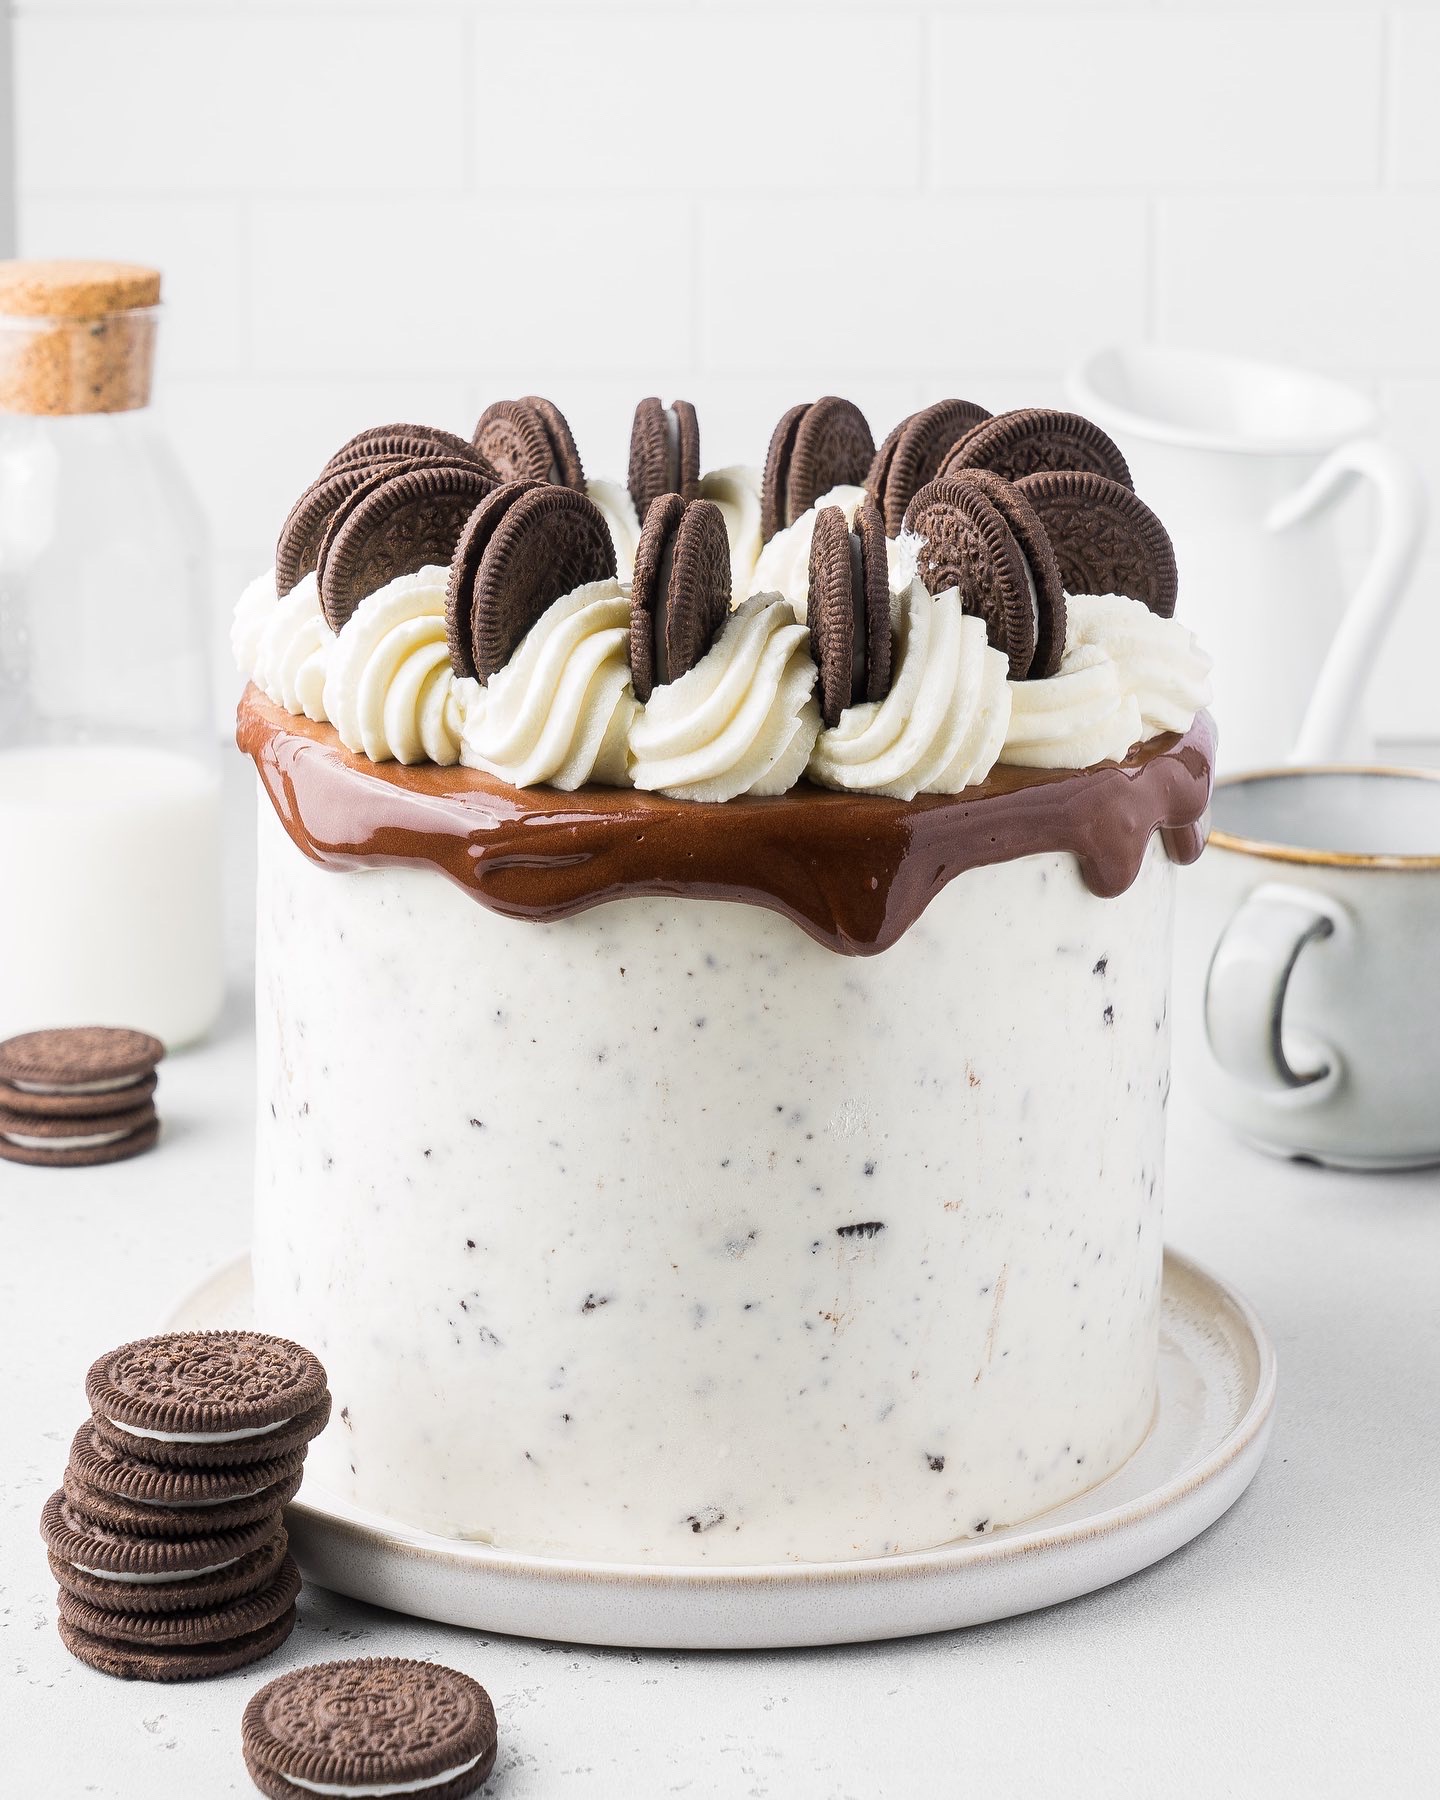 Шоколадный торт со сметанным кремом – простой и вкусный рецепт, как приготовить пошагово